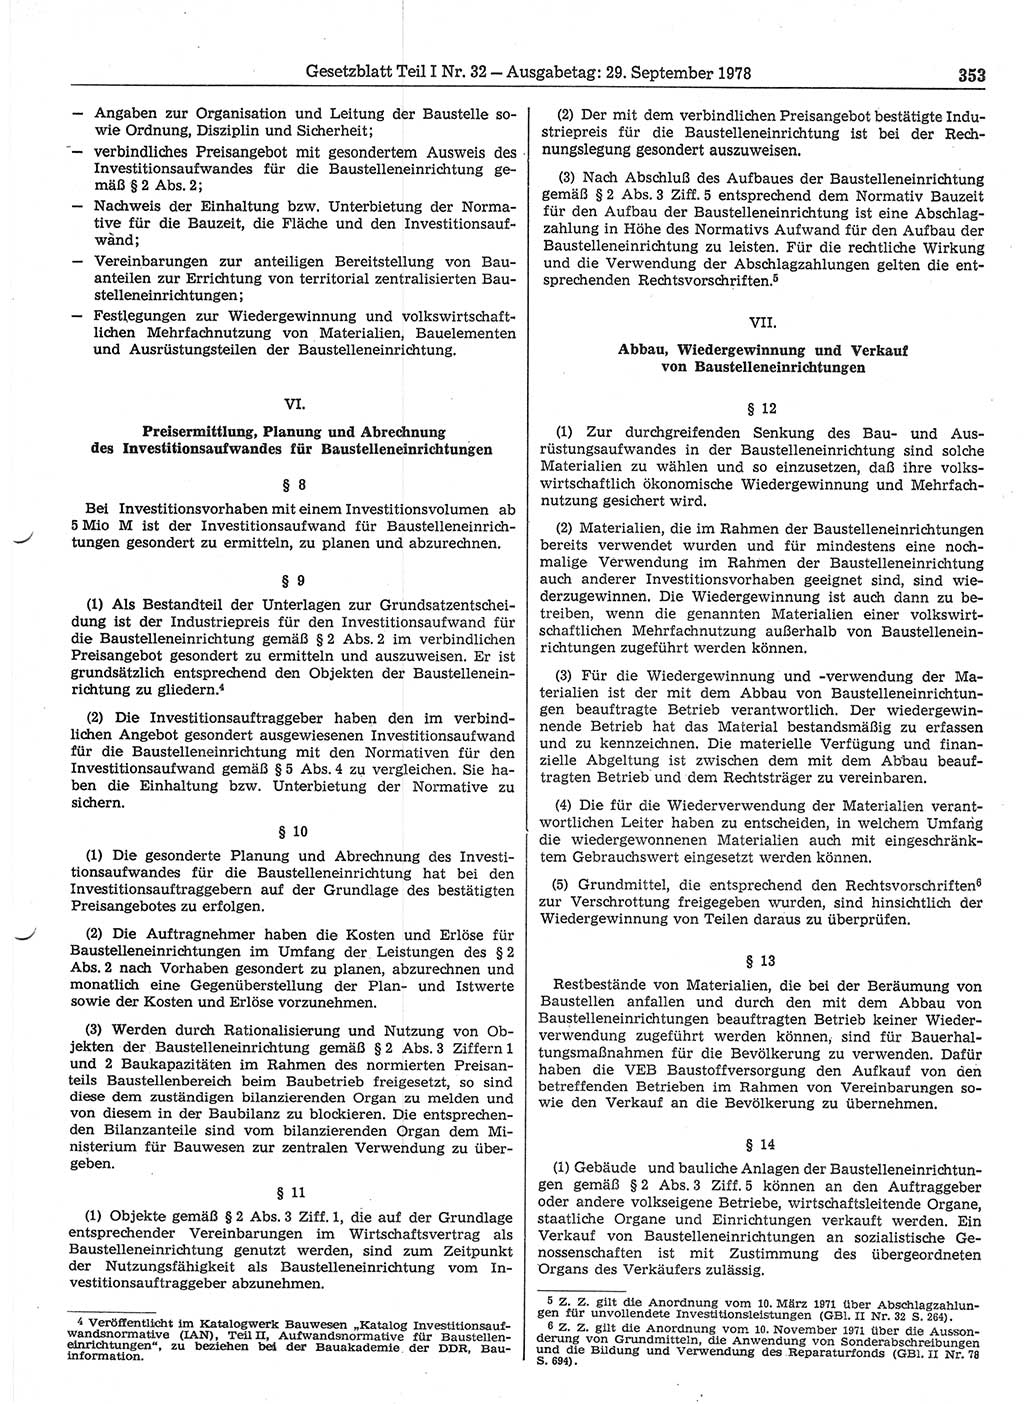 Gesetzblatt (GBl.) der Deutschen Demokratischen Republik (DDR) Teil Ⅰ 1978, Seite 353 (GBl. DDR Ⅰ 1978, S. 353)